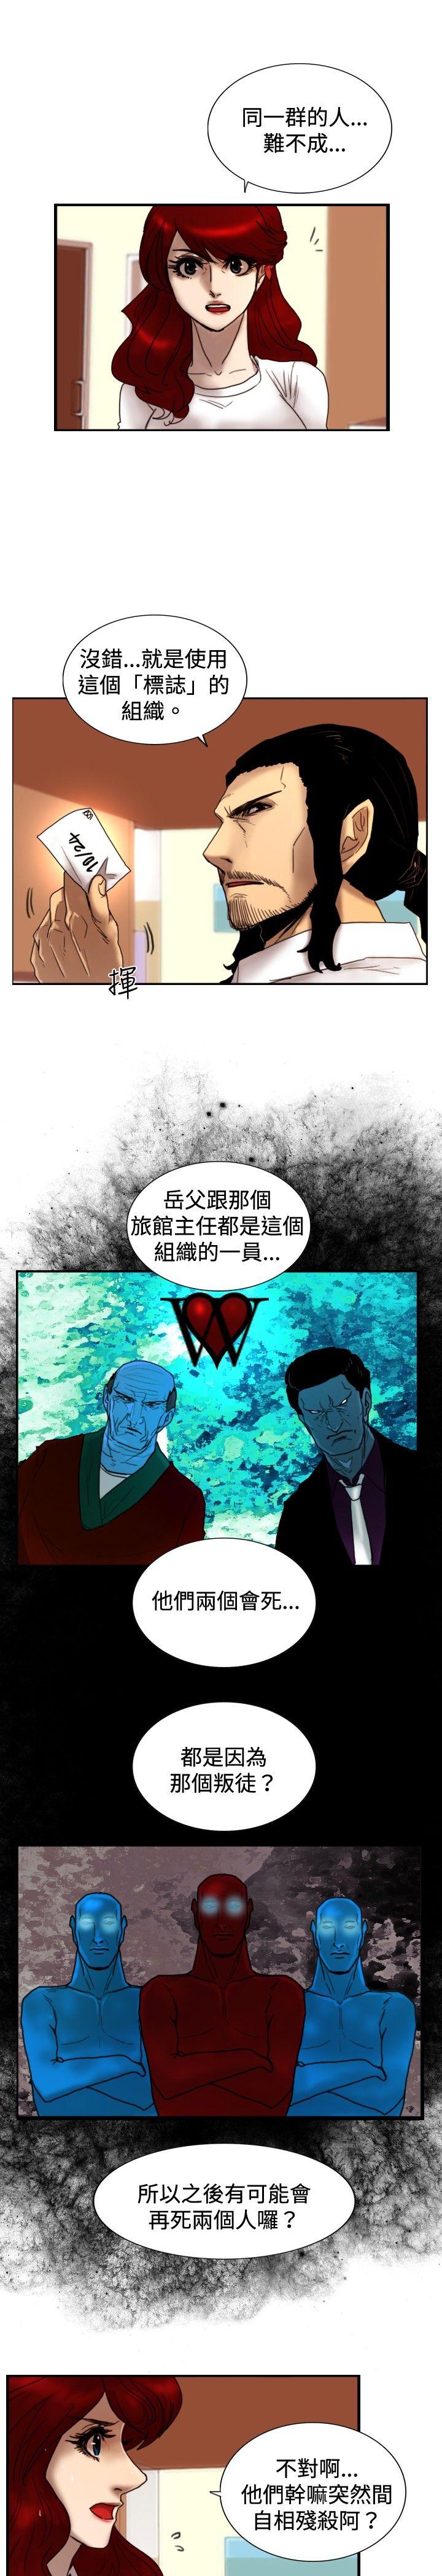 韩国污漫画 覺醒(完結) 第23话鬼 6